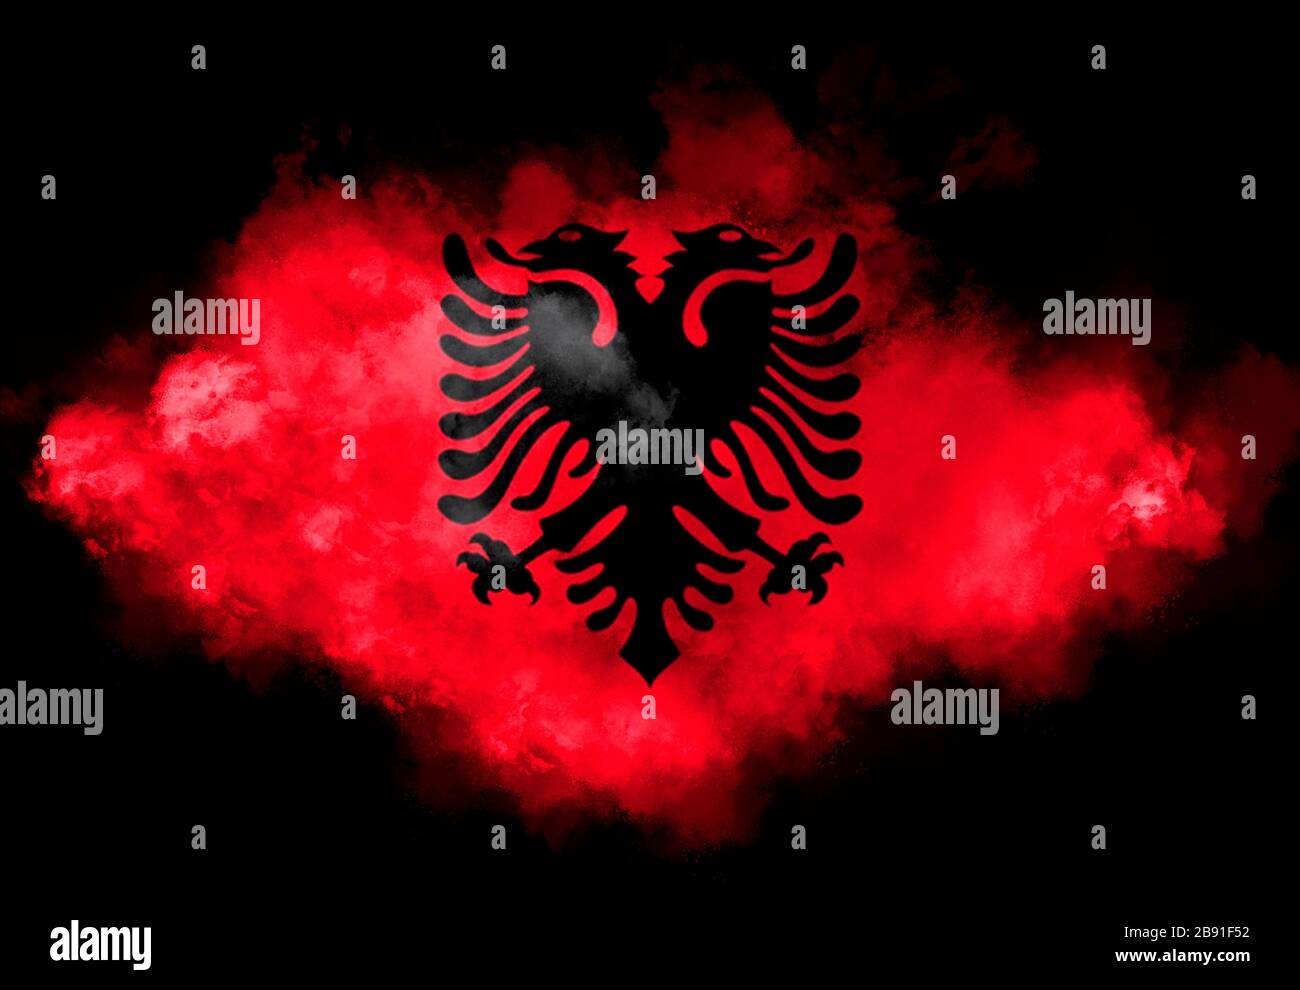 Albanian symbol immagini e fotografie stock ad alta risoluzione - Alamy